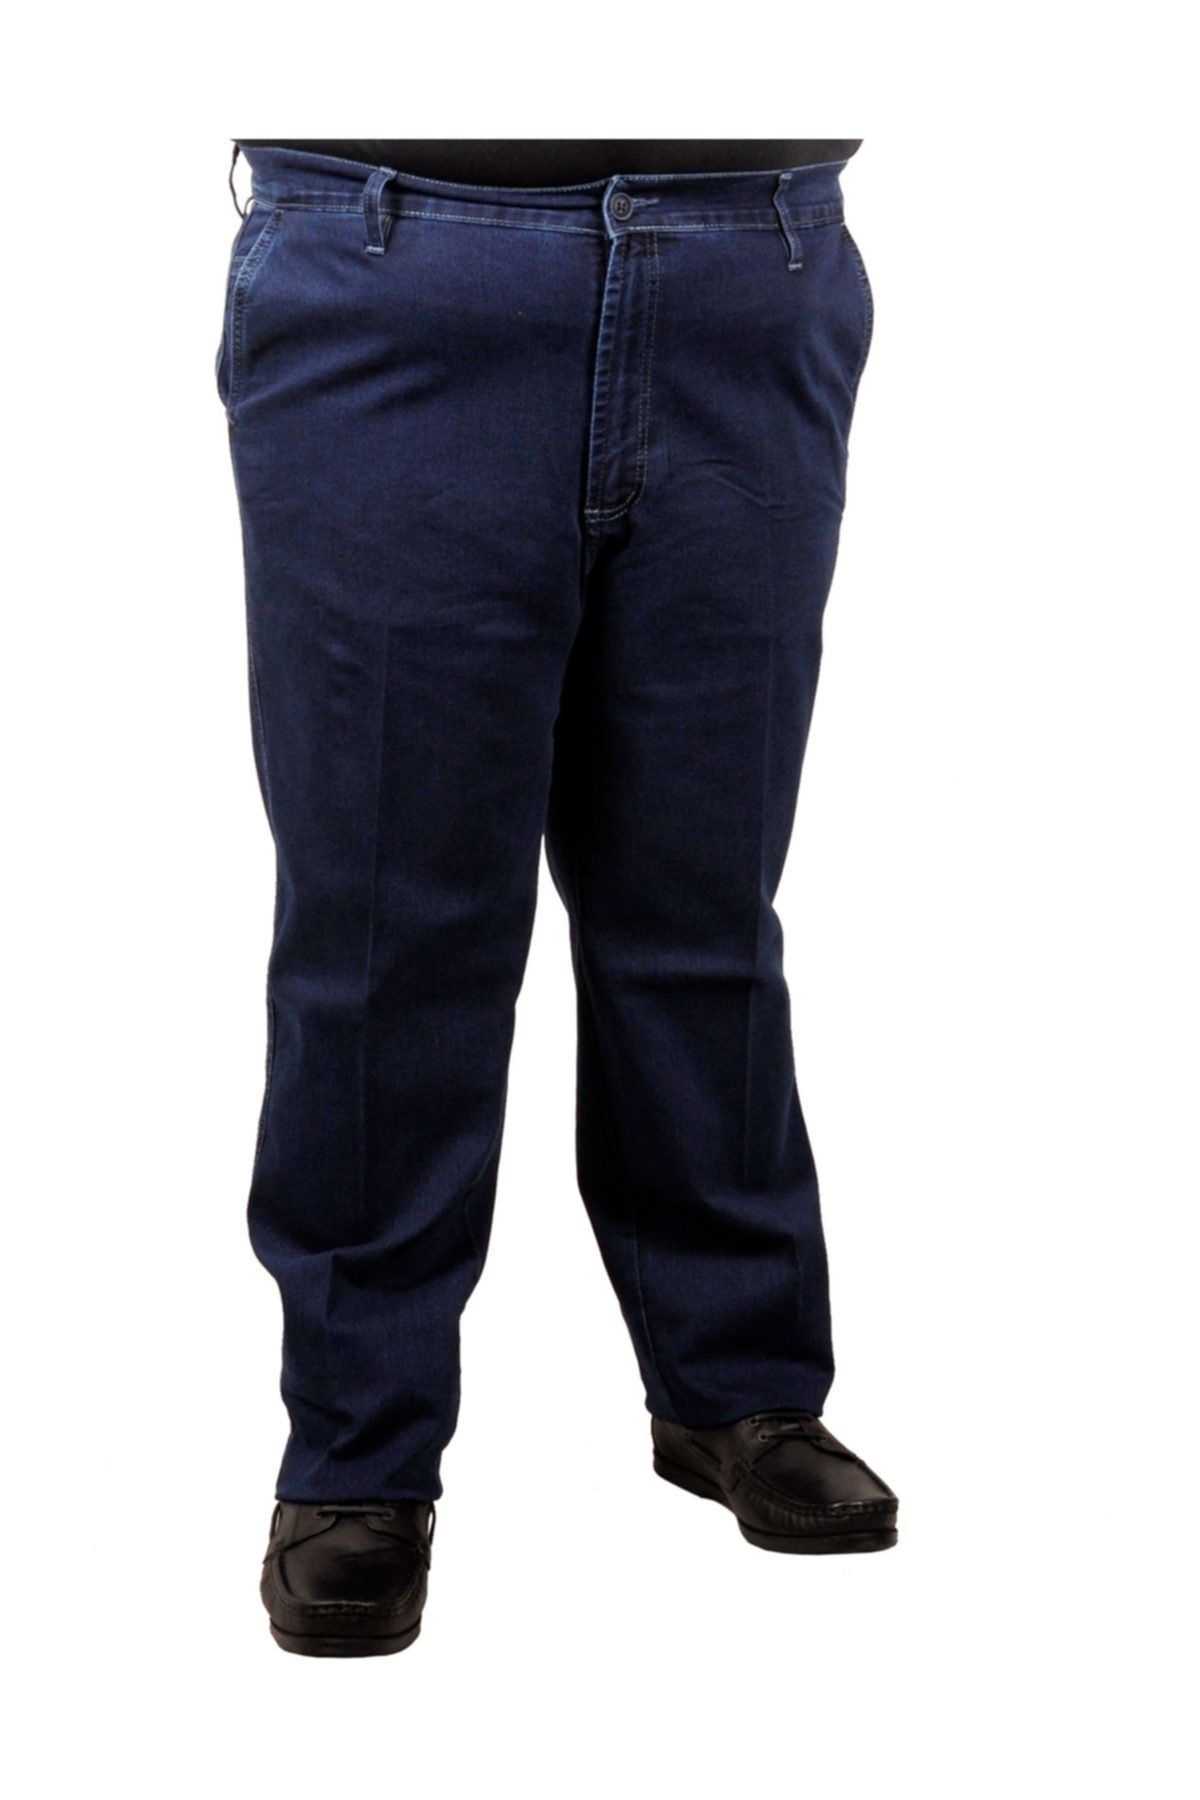 Modexl Büyük Beden Erkek Pantolon Kot Yan Cep Likralı 18881 Mavi